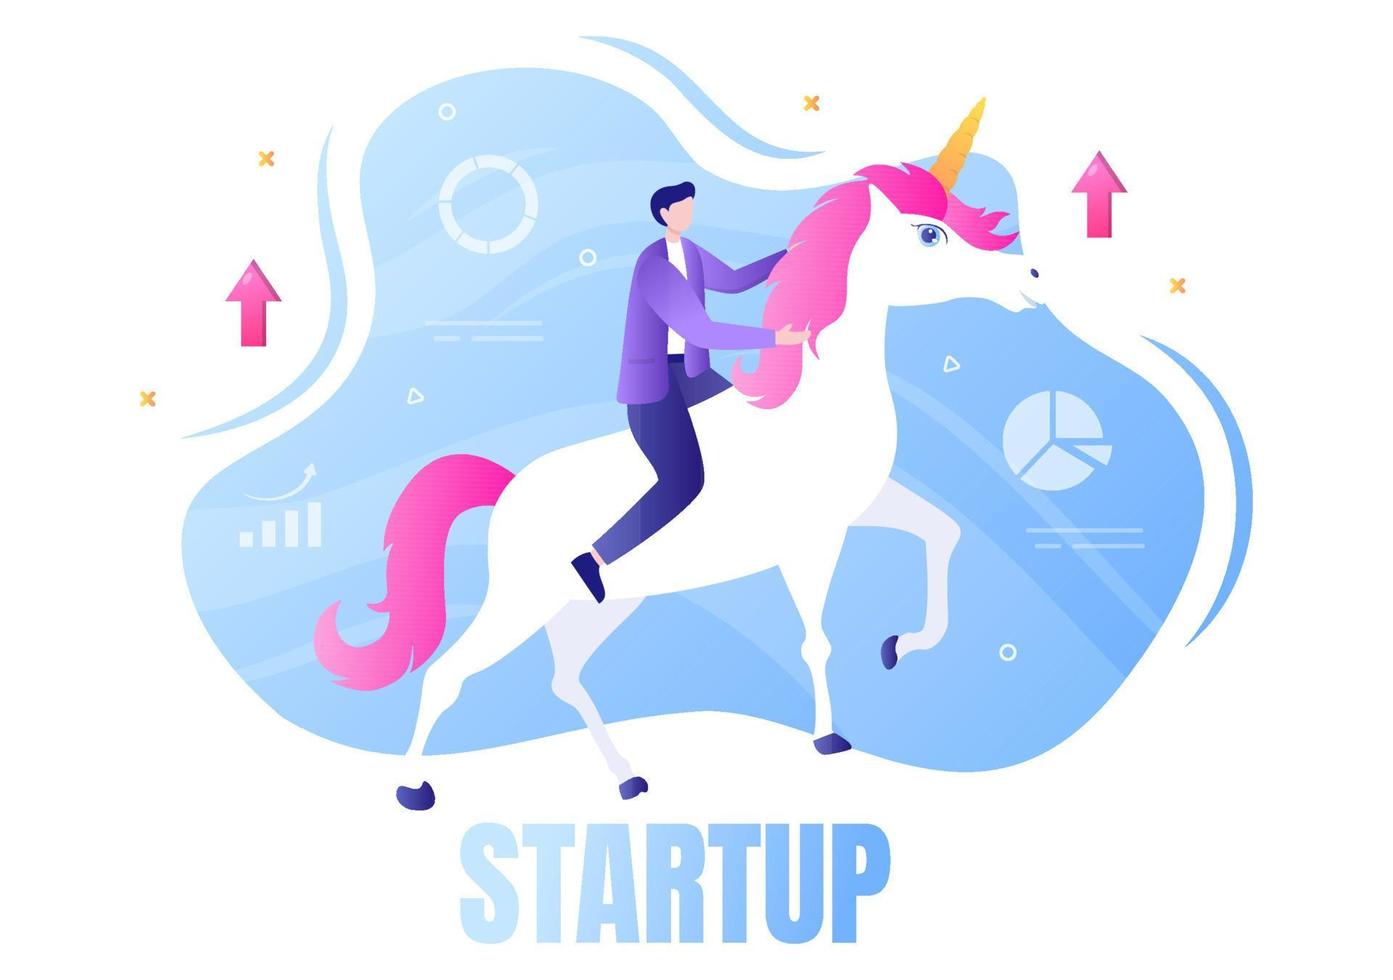 unicorn business startup symbol vektorillustration. affärsman med utvecklingsprocess, innovationsprodukt och kreativ idé ser målet att bli framgångsrik vektor